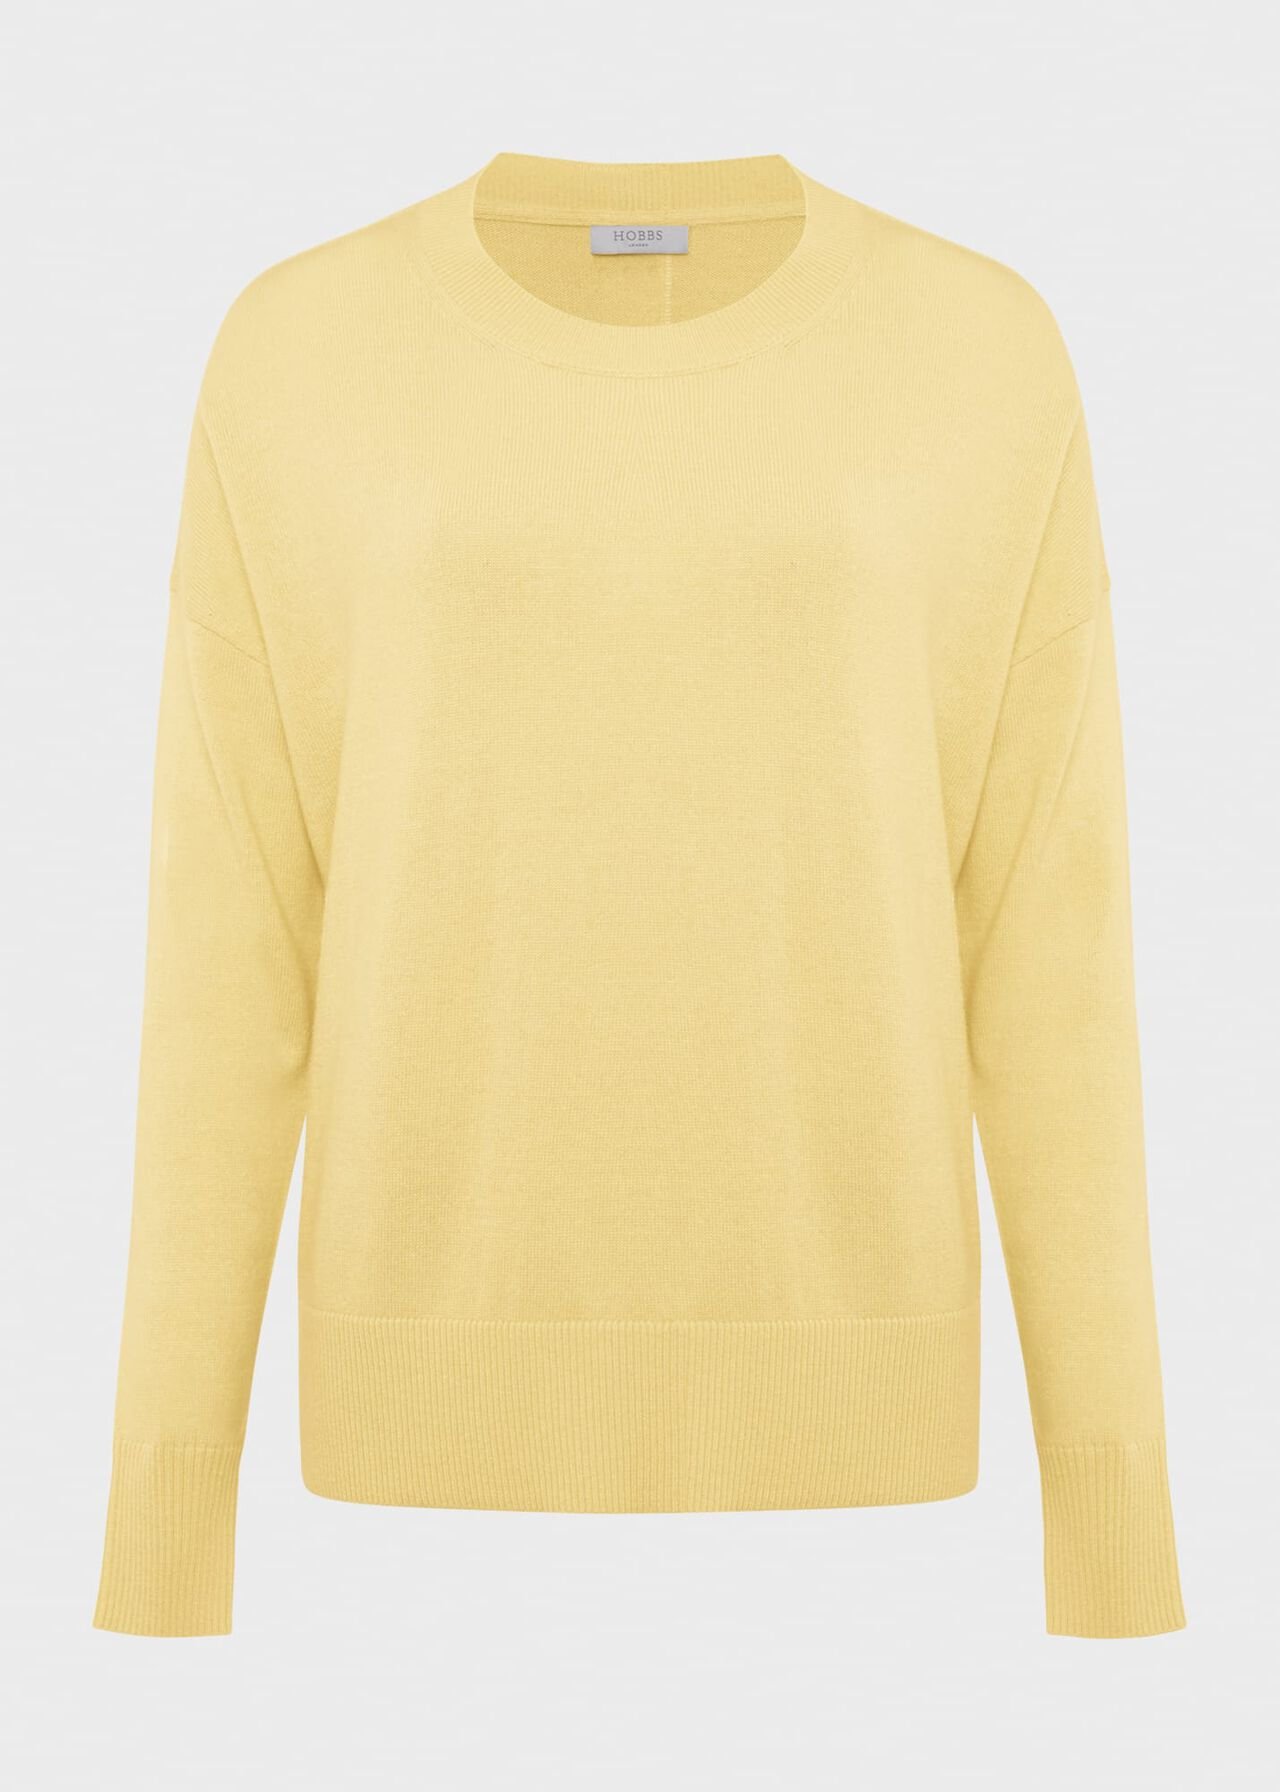 Lydia Button Sweater With Cashmere, Lemon Zest, hi-res